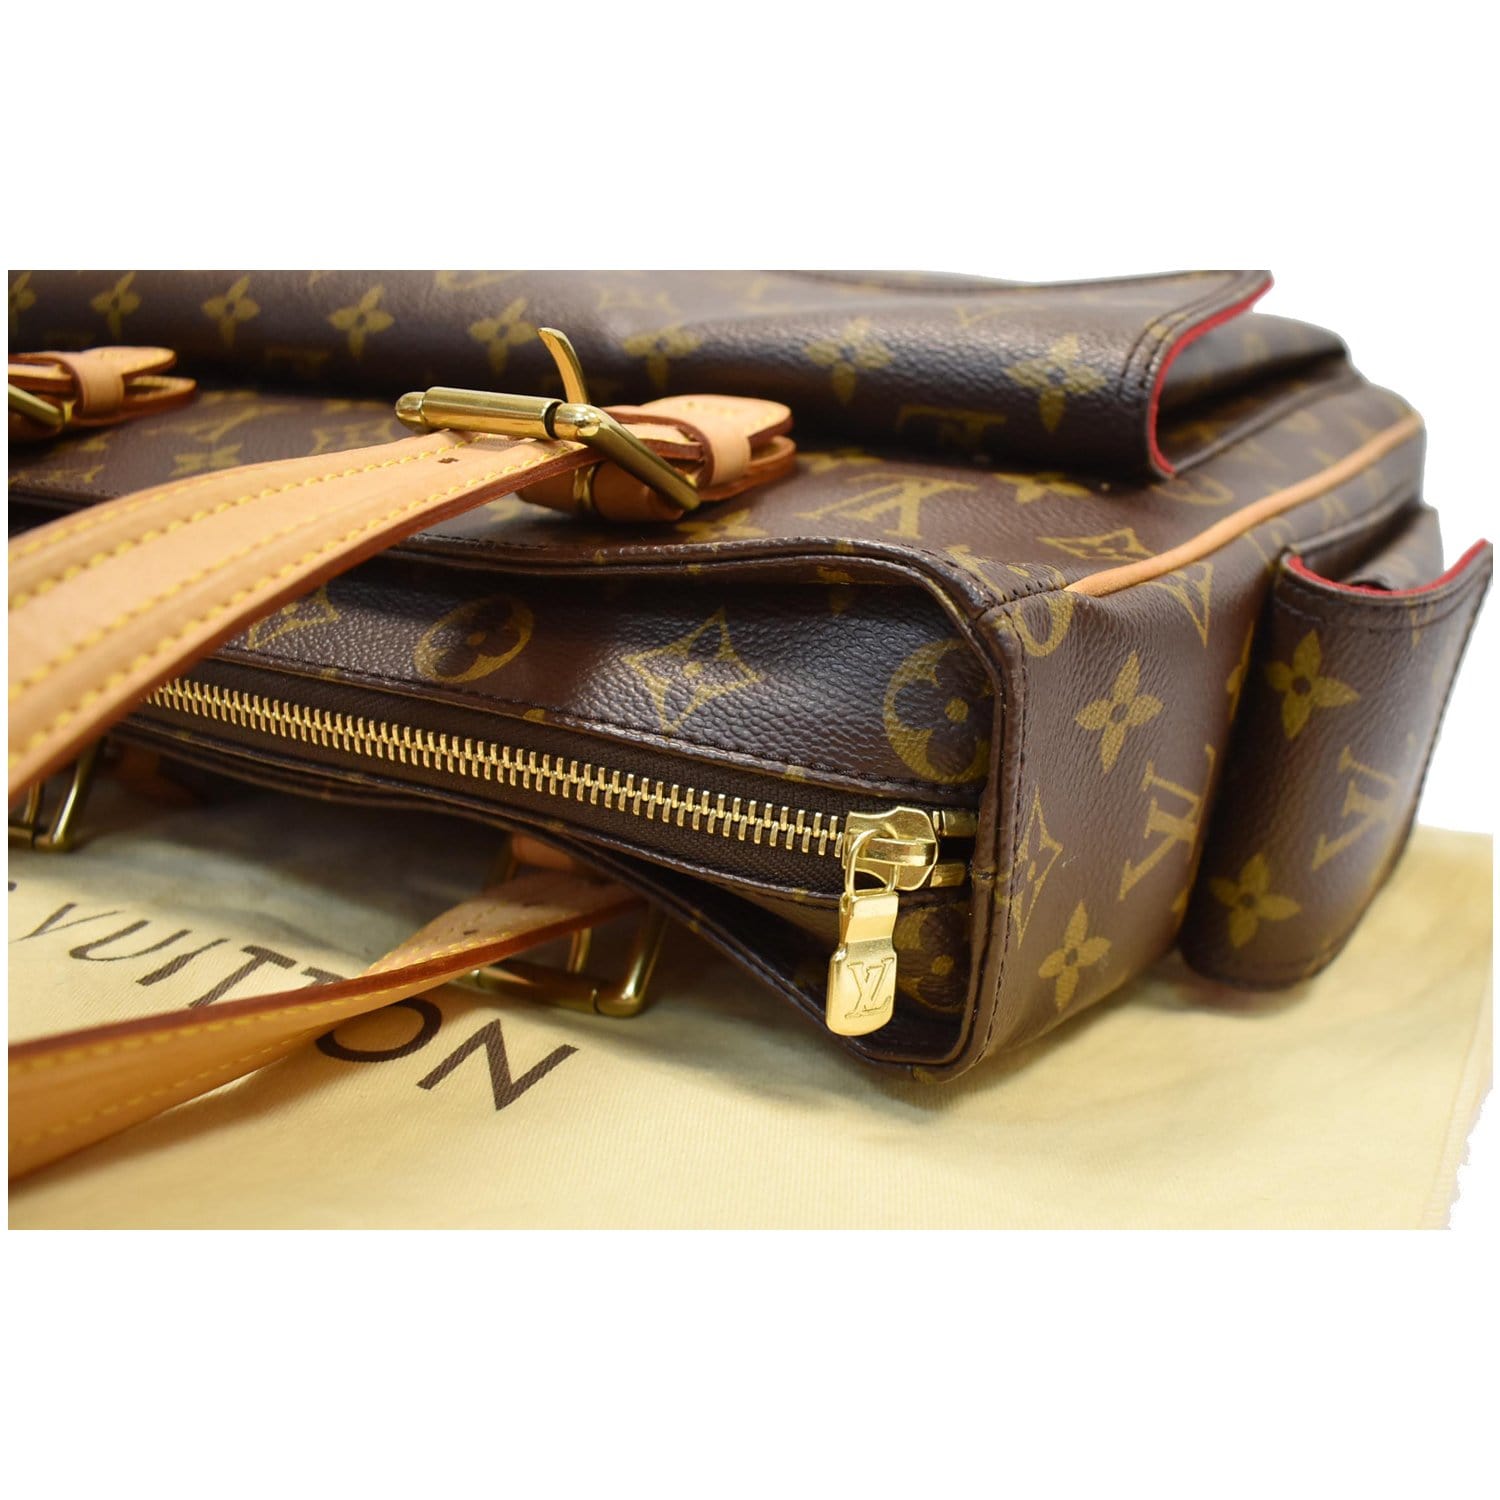 Viva cité leather handbag Louis Vuitton Brown in Leather - 36024269